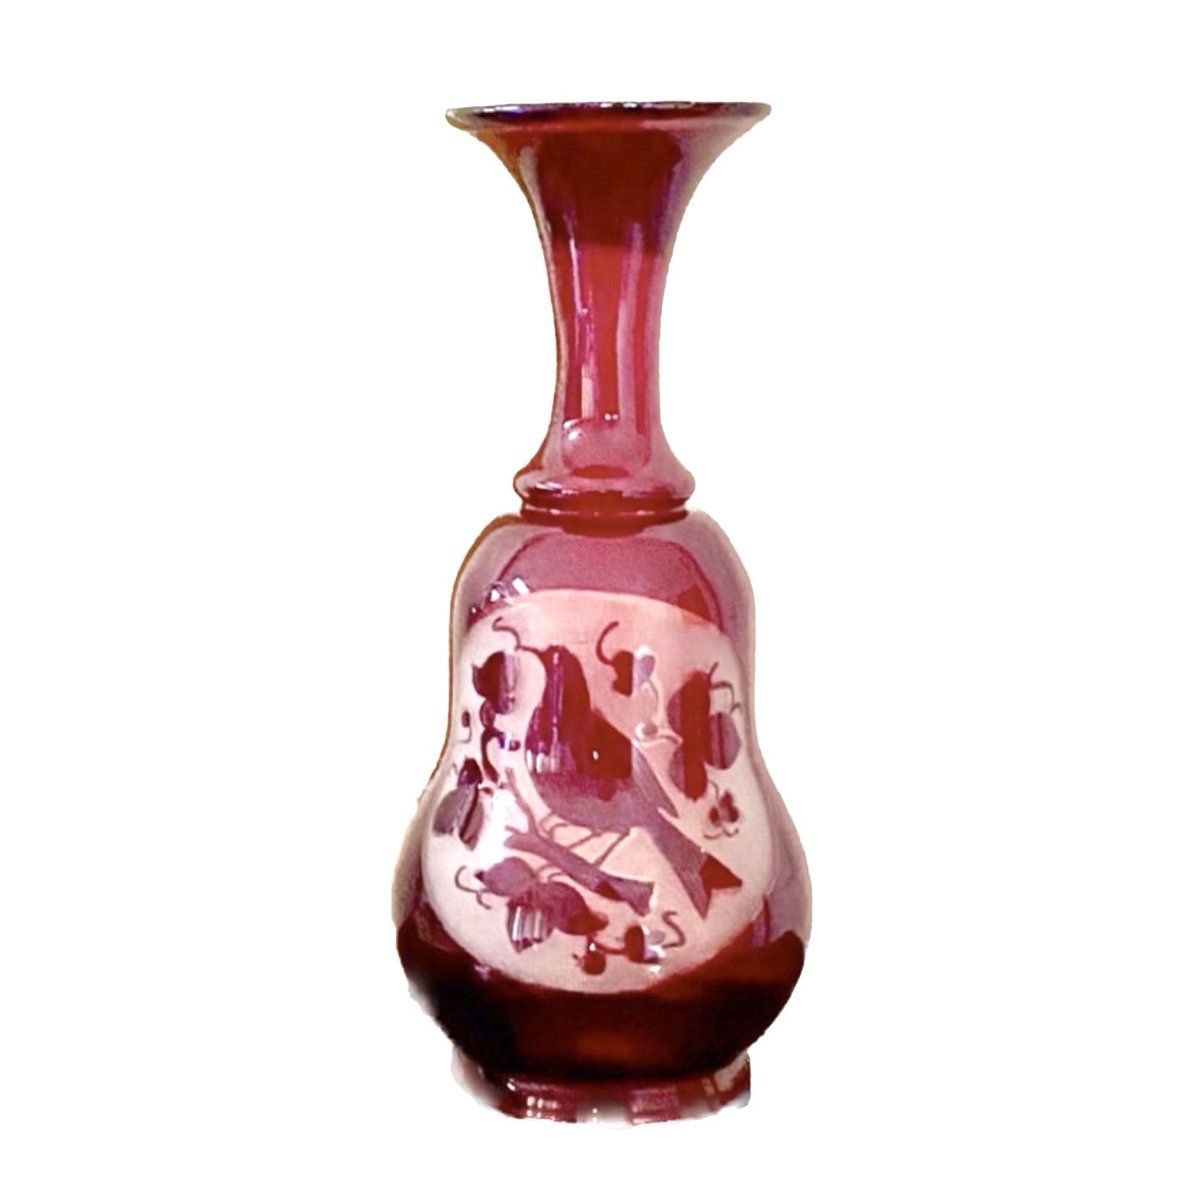 Vintage ruby red art glass vase ♥️ etsy.com/listing/106976…

#vintage #vintageshopping #etsysale #etsyshop #etsyfinds #vintageglass #vintagehome #bohohippie #vintagedecor #homedecor #redglass #vintagevase #gift #uniquegifts